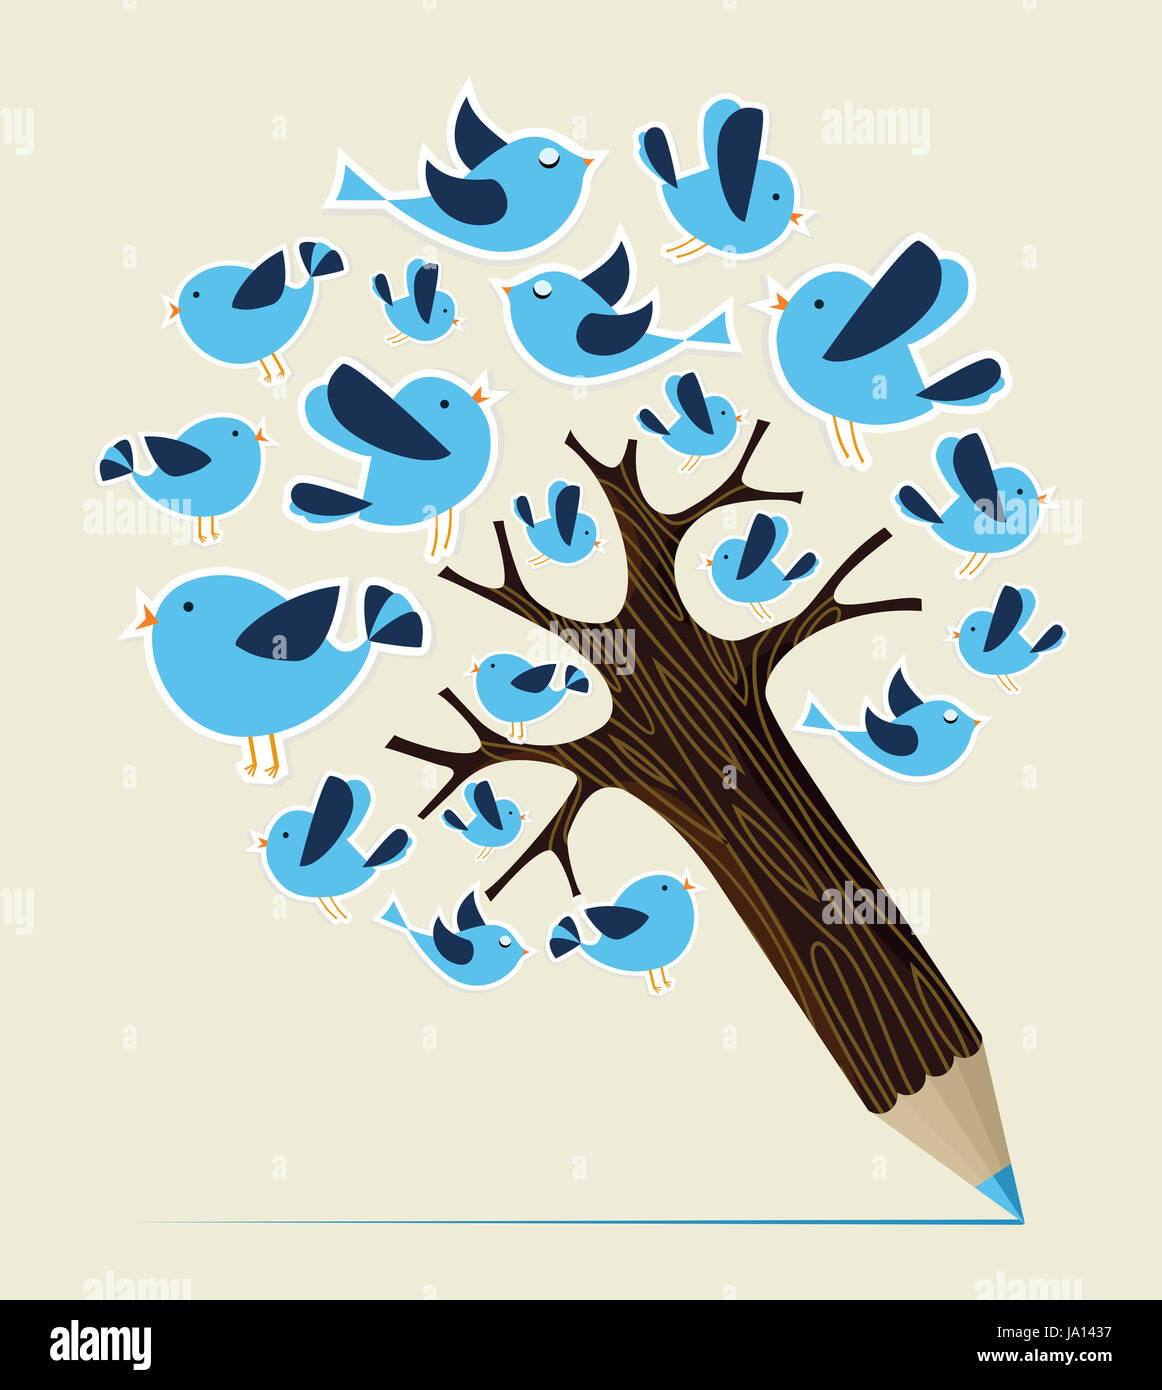 Flying tweeting concept oiseaux arbre crayon. Couches d'illustration vectorielle pour une manipulation facile et coloris. Banque D'Images